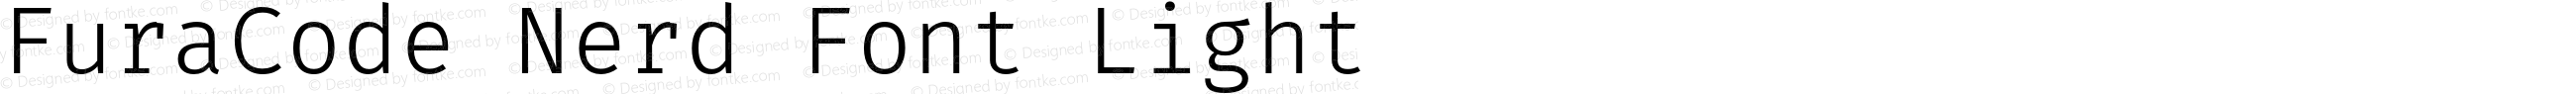 Fura Code Light Nerd Font Complete